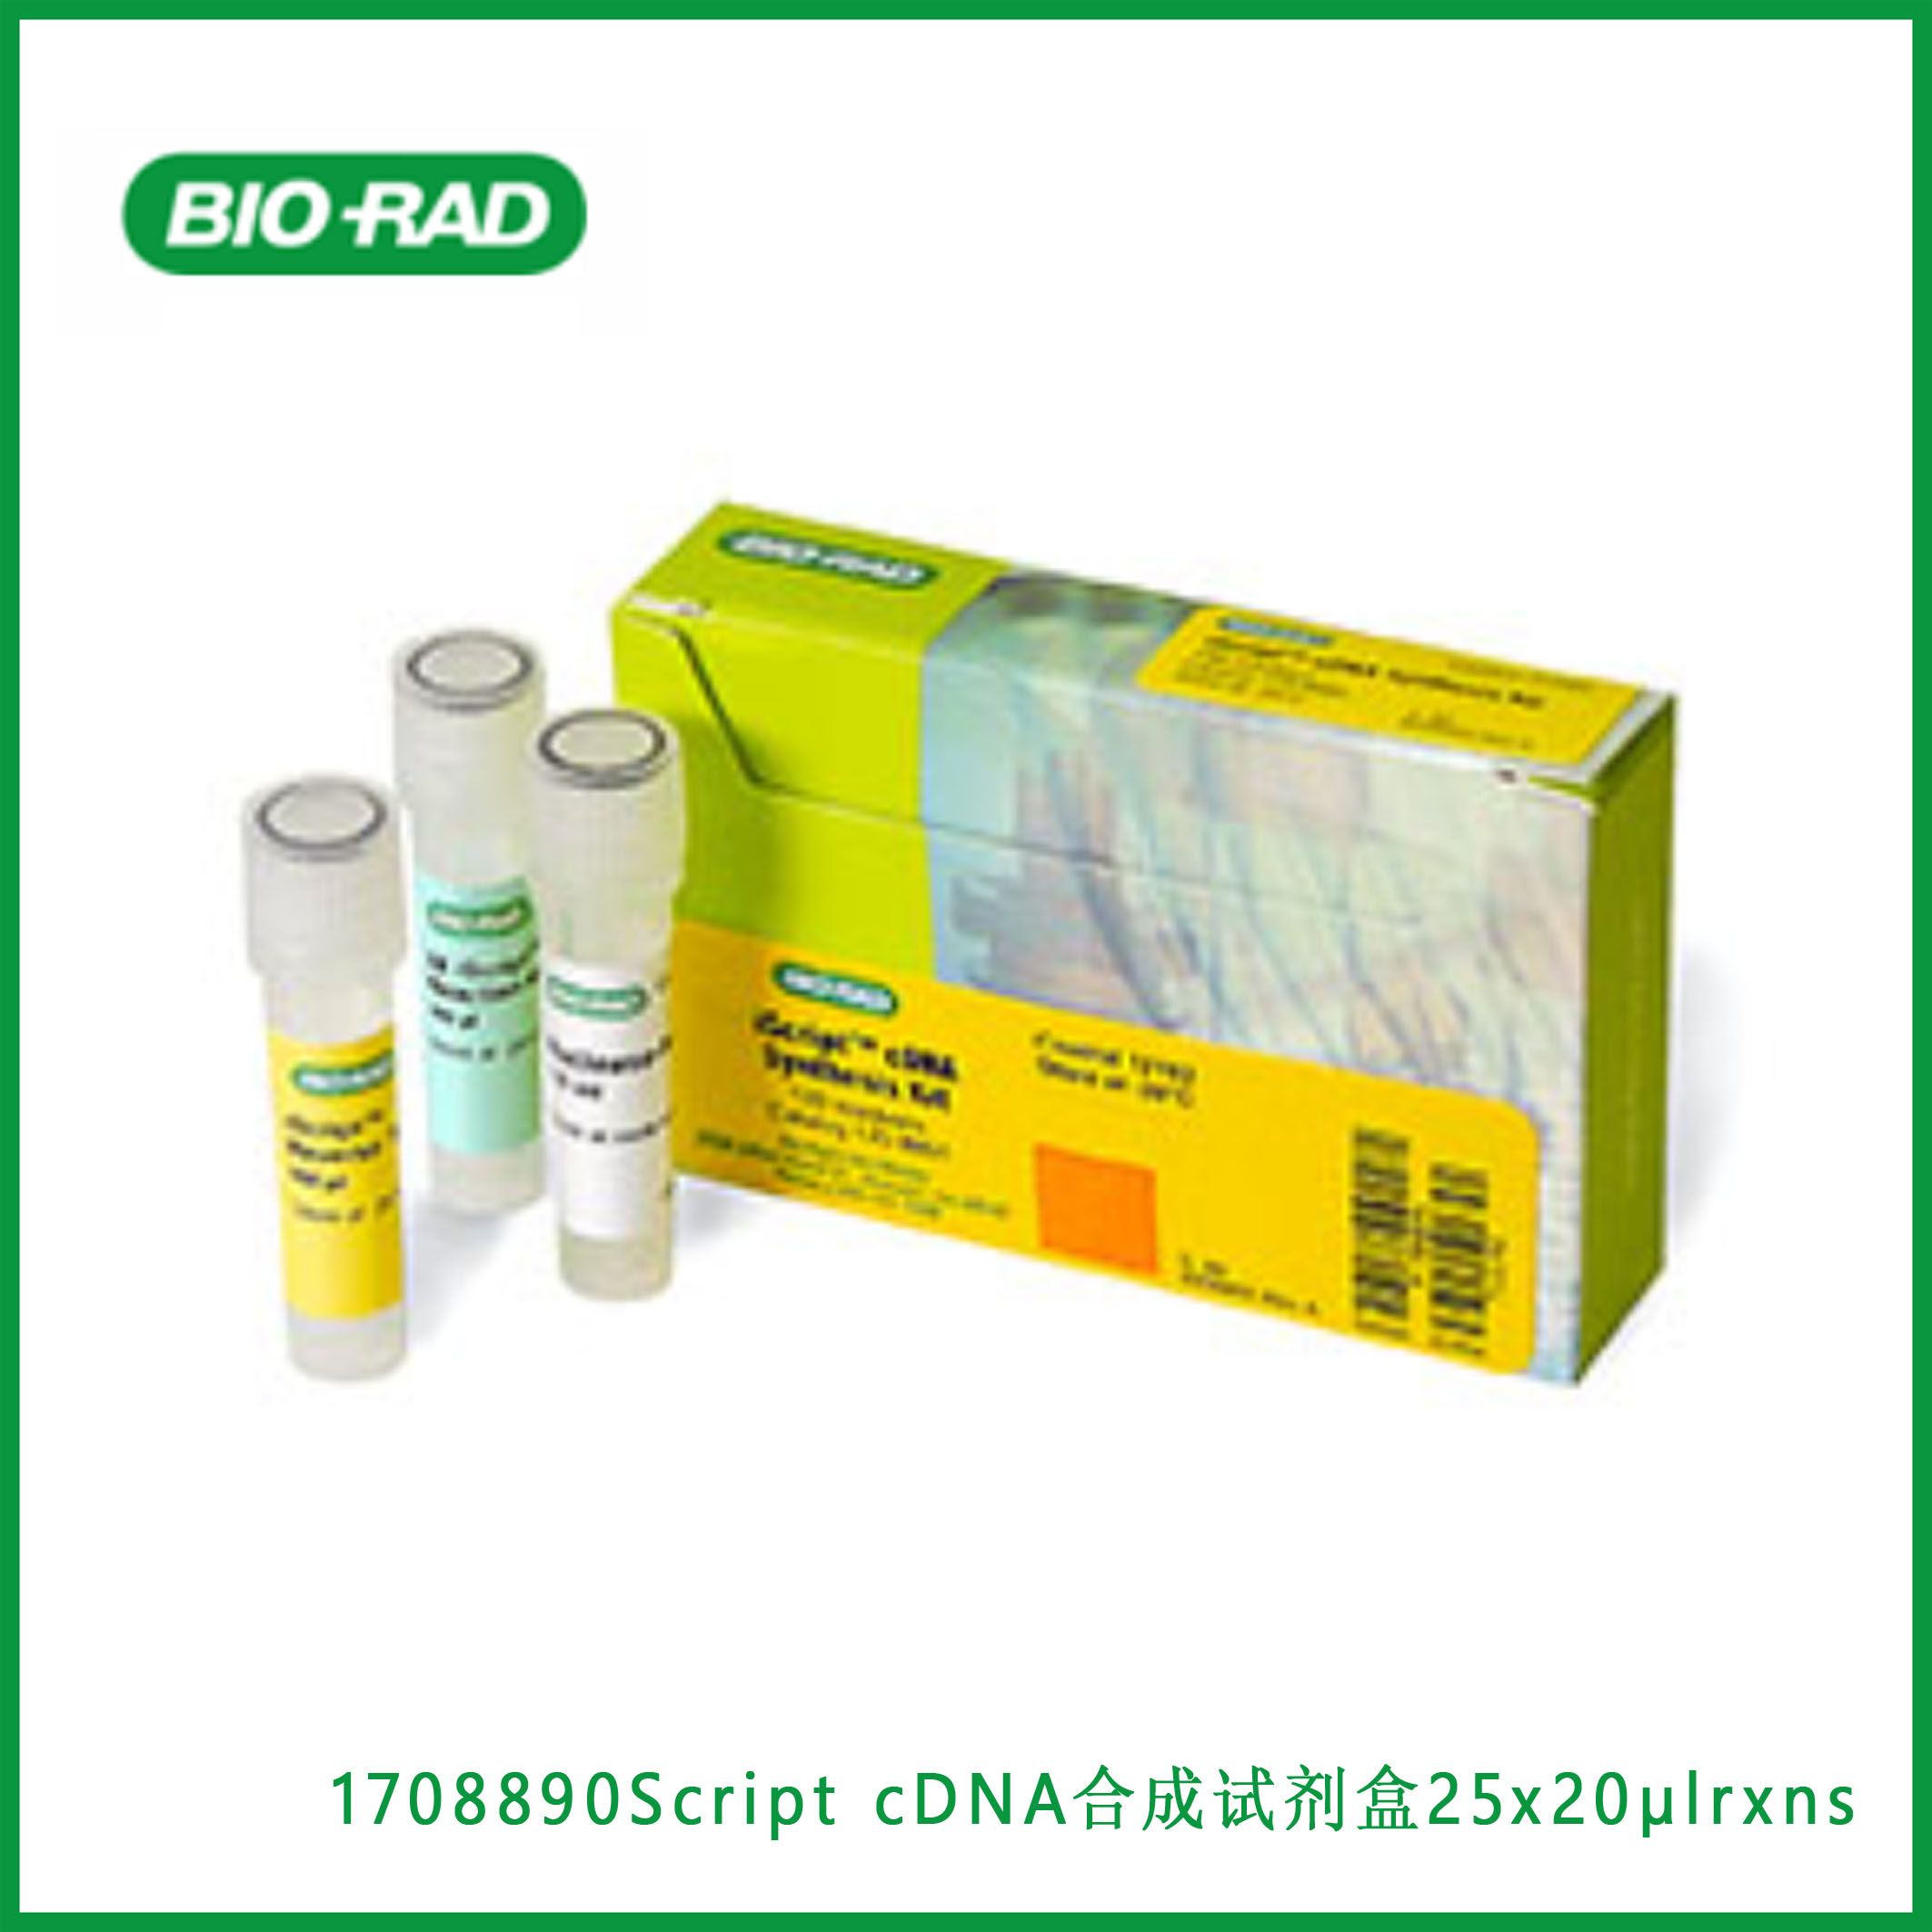 伯乐Bio-Rad1708890iScript™ cDNA Synthesis Kit, 25 x 20 µl rxns， Script™ cDNA合成试剂盒，现货